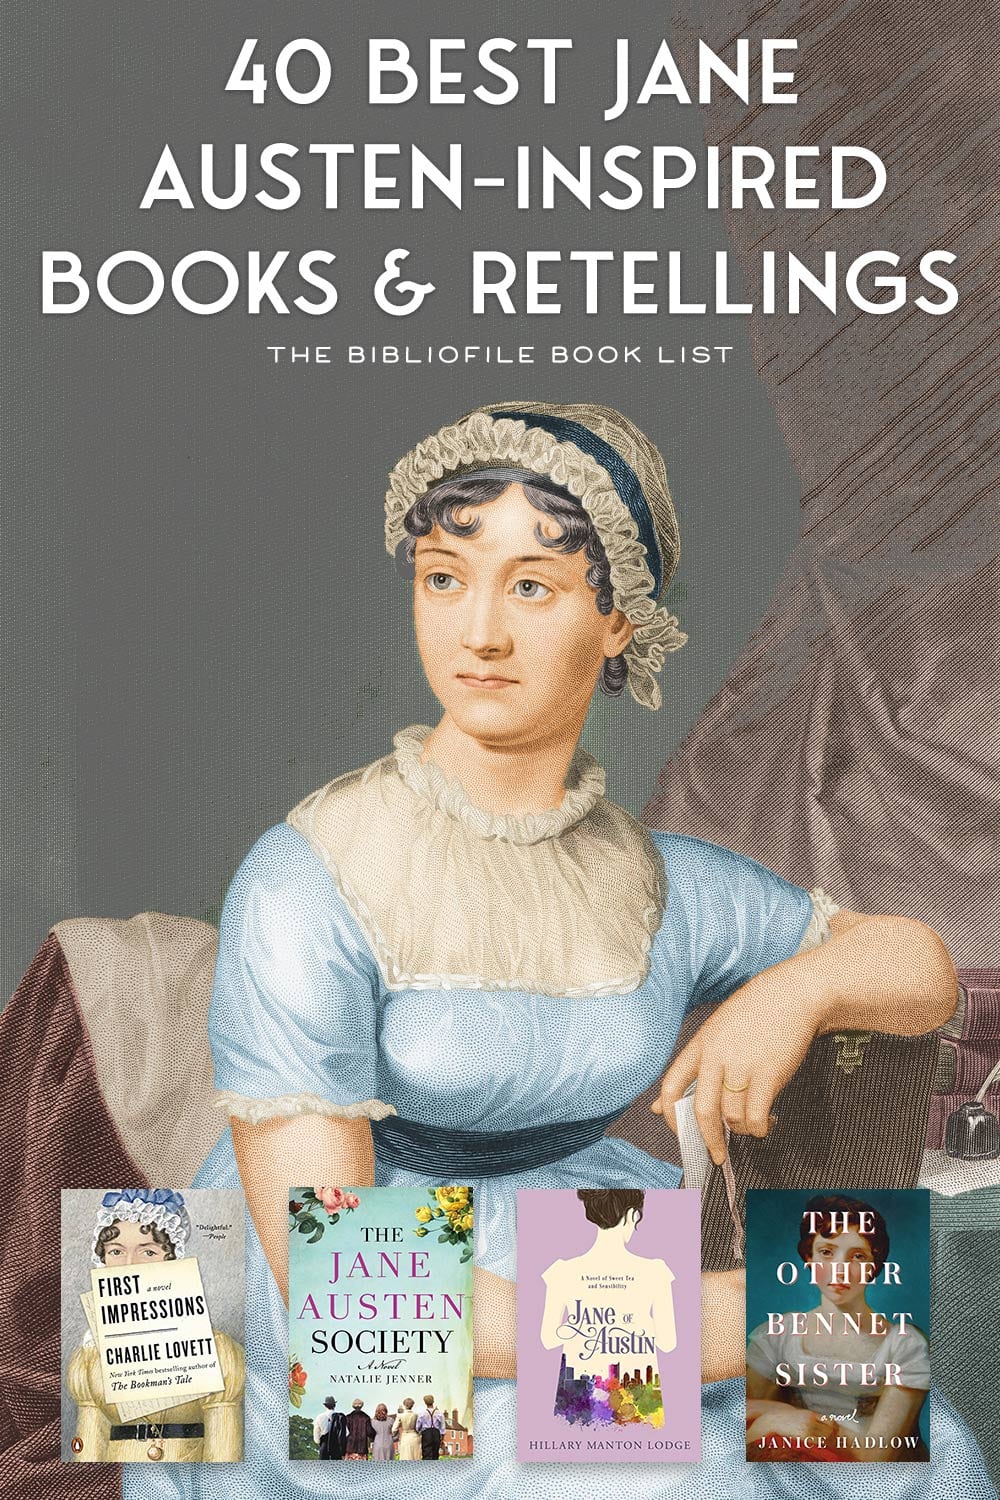 Reading Austen in America by Juliette Wells